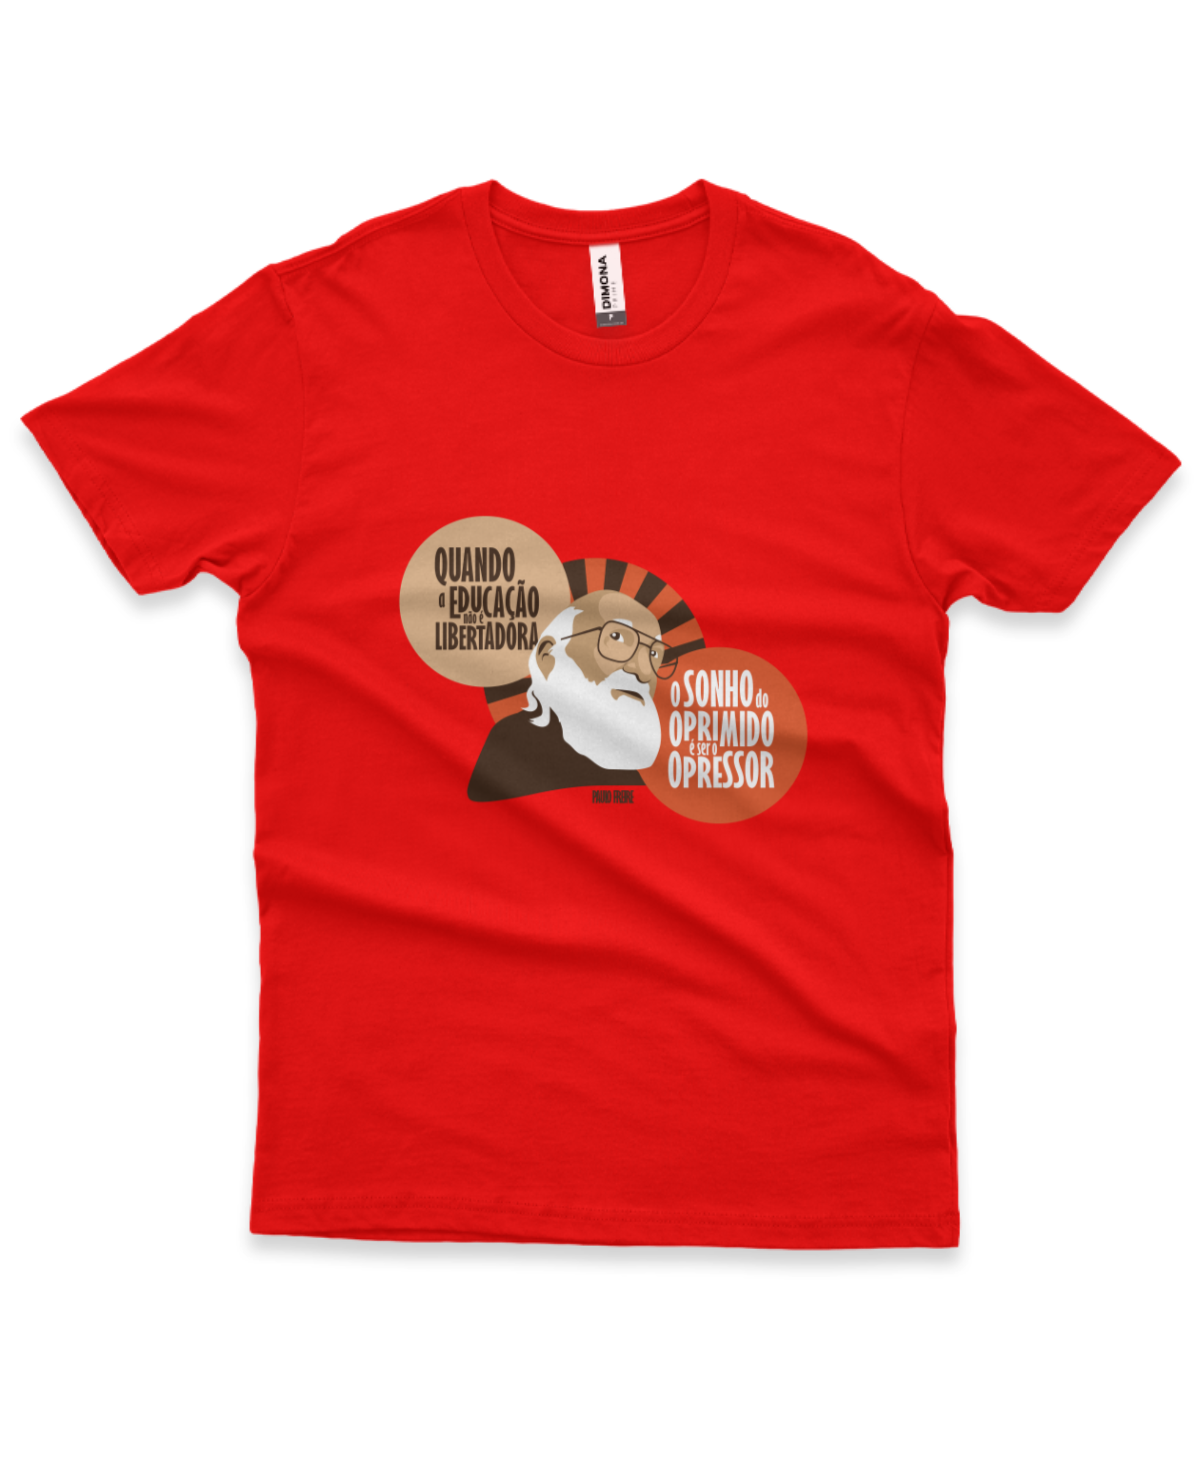 camiseta masculina cor vermelha com a ilustração do Paulo Freire e a frase "quando a educação não é libertadora, o sonho do oprimido é ser opressor"